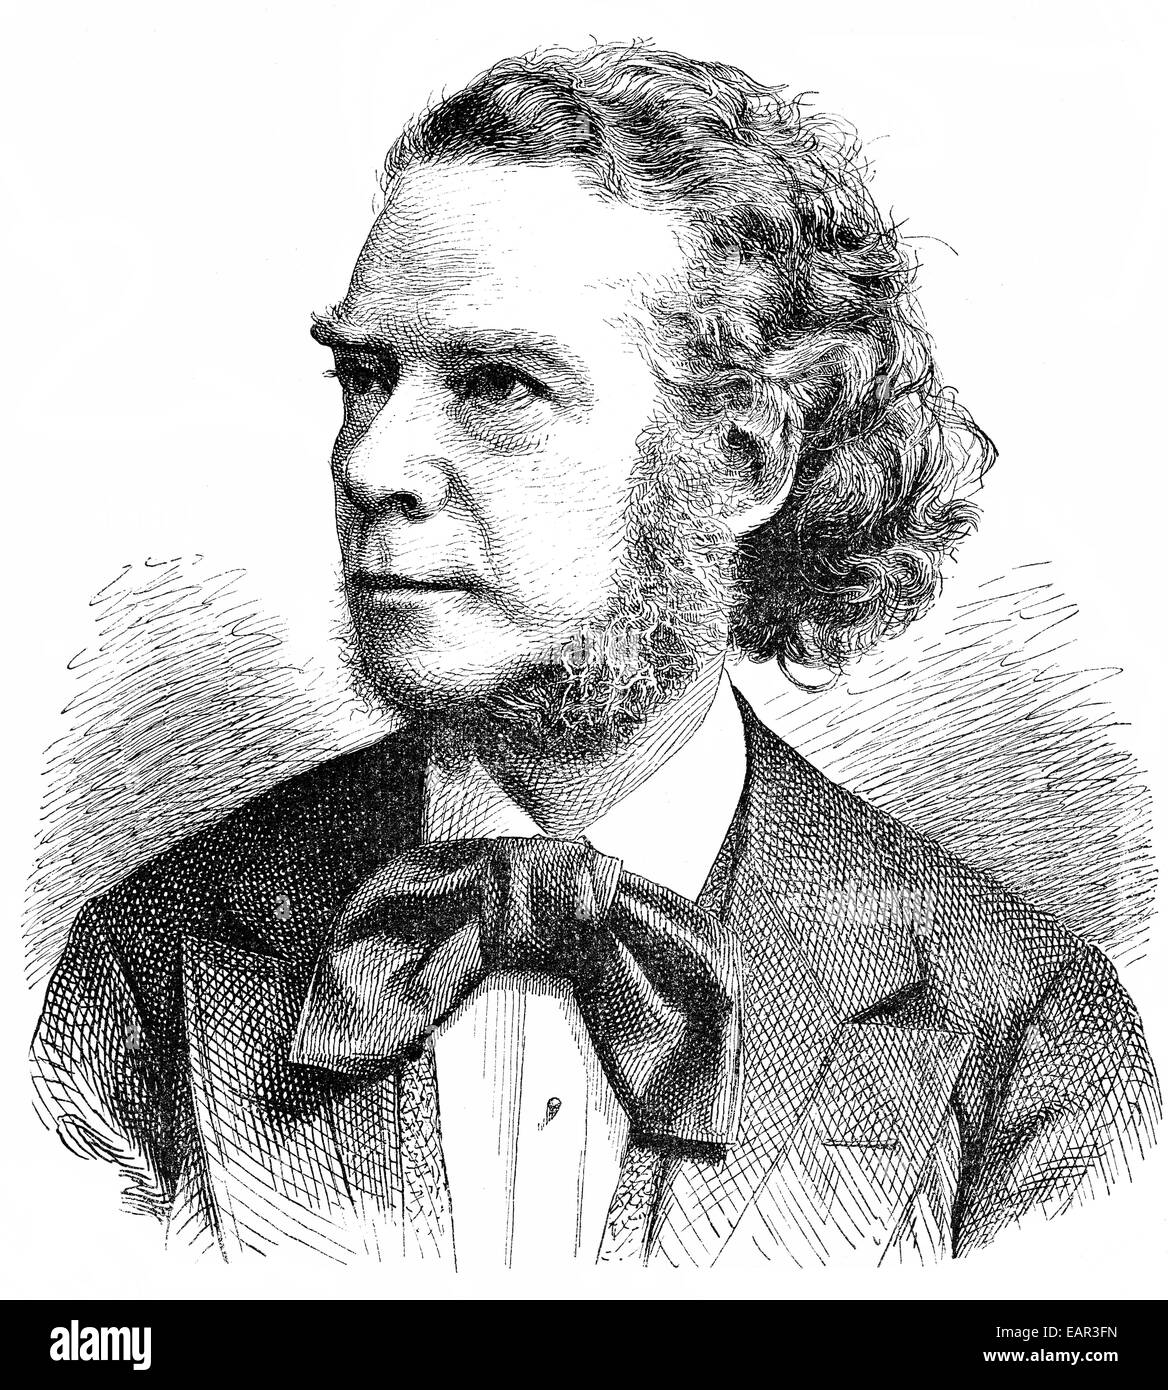 Carl Heinrich Carsten Reinecke, 1824 - 1910, a German composer, ...